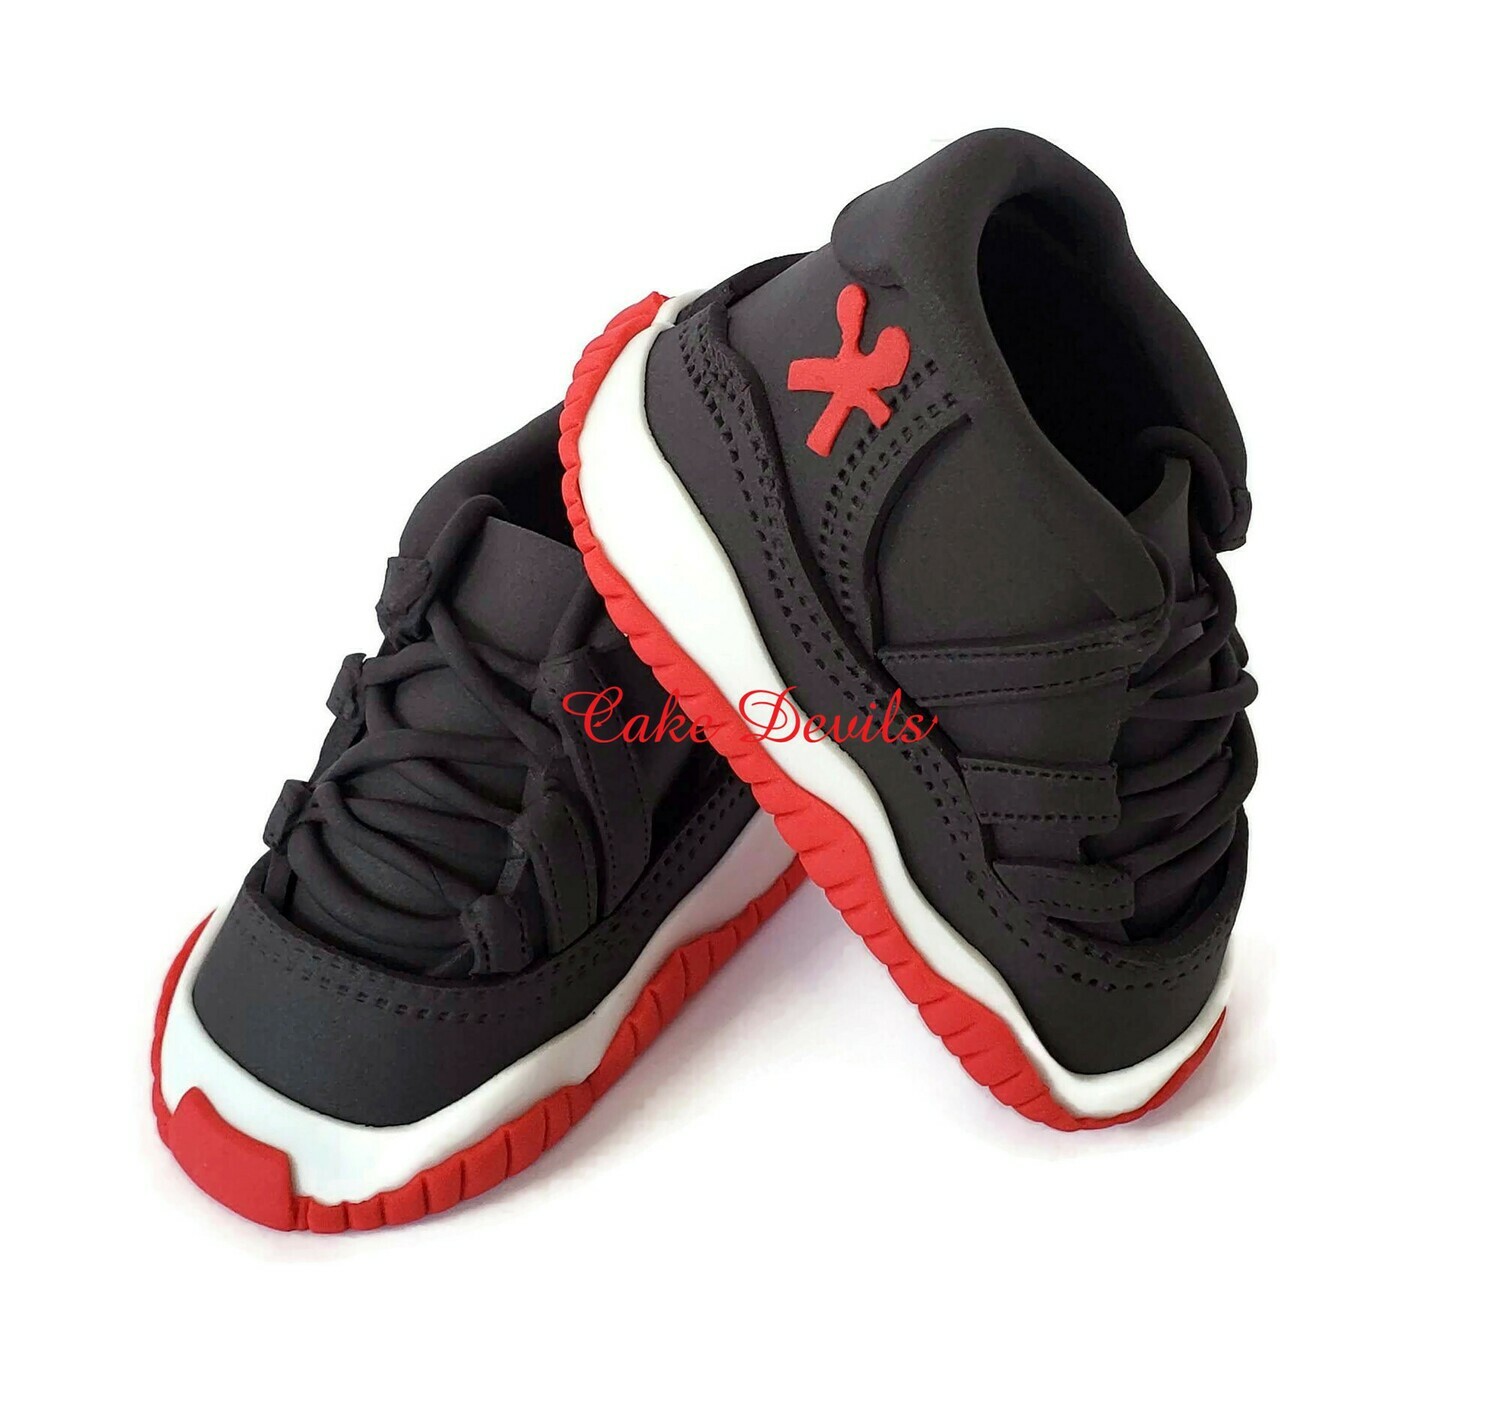 Fondant Sneakers Cake Toppers, Nike Jordan 11 inspired